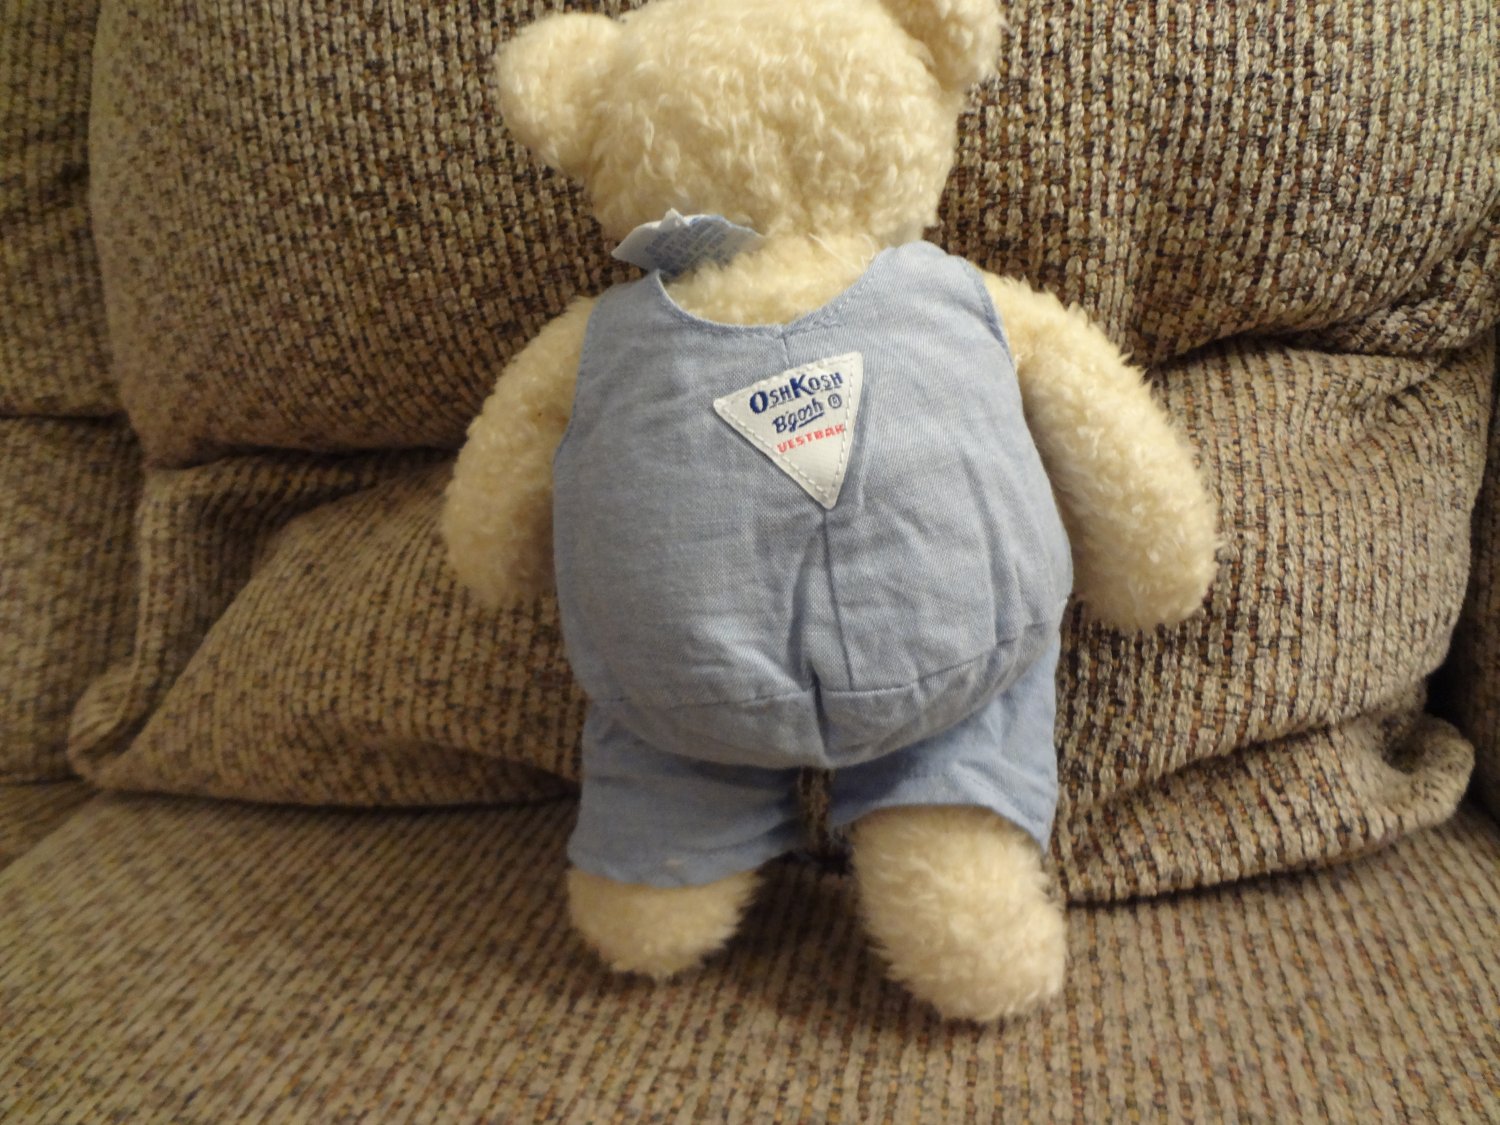 Eden OshKosh B'goshCream Teddy Bear Cloth Overalls lovey Plush 10